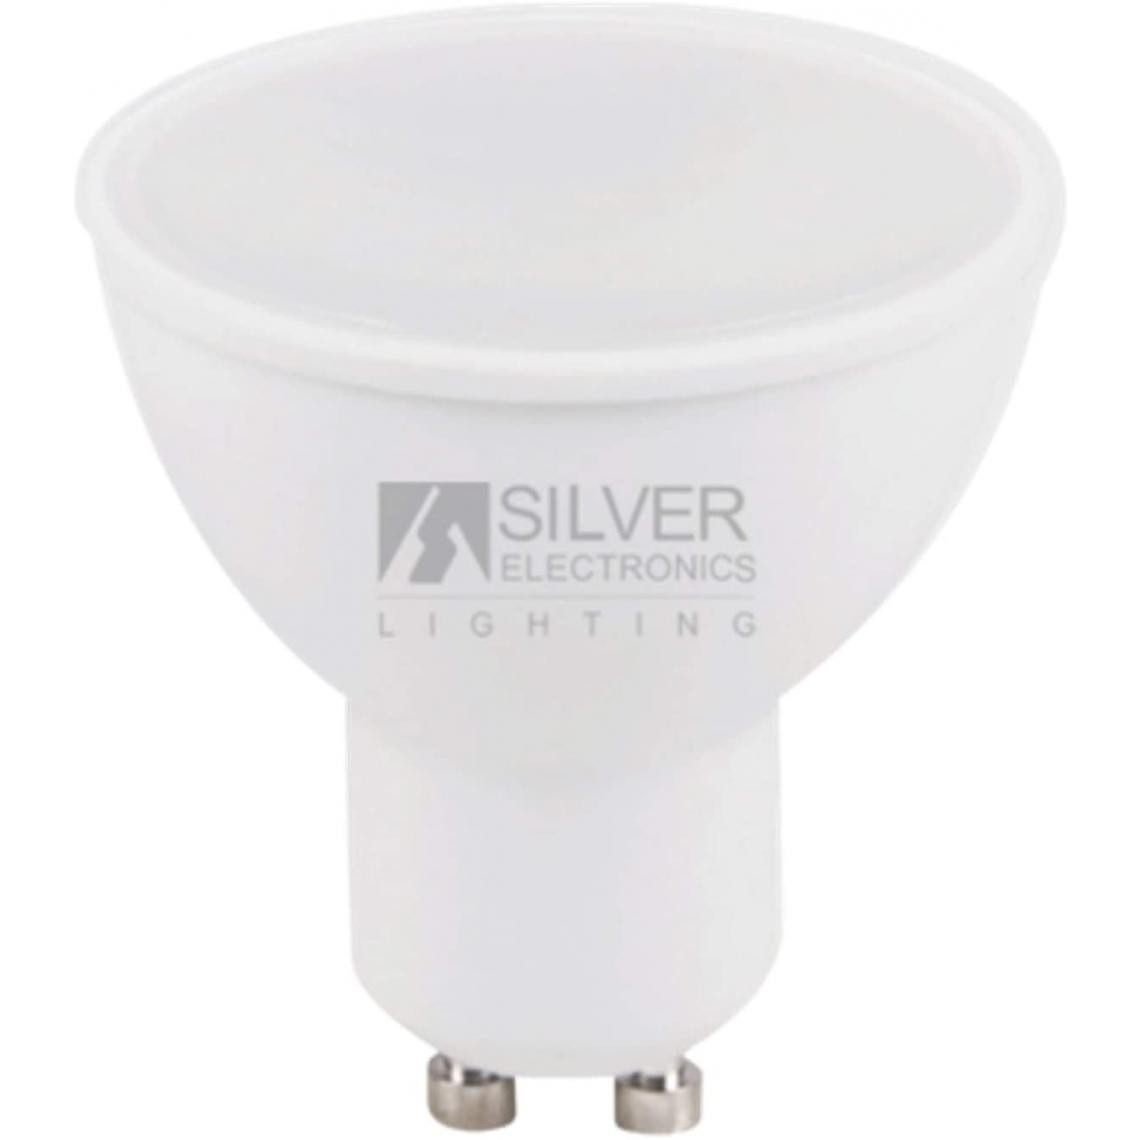 Inconnu - Ampoule LED Dichroïque Silver Electronics ECO GU10 7W 3000K (Lumière chaude) - Ampoules LED